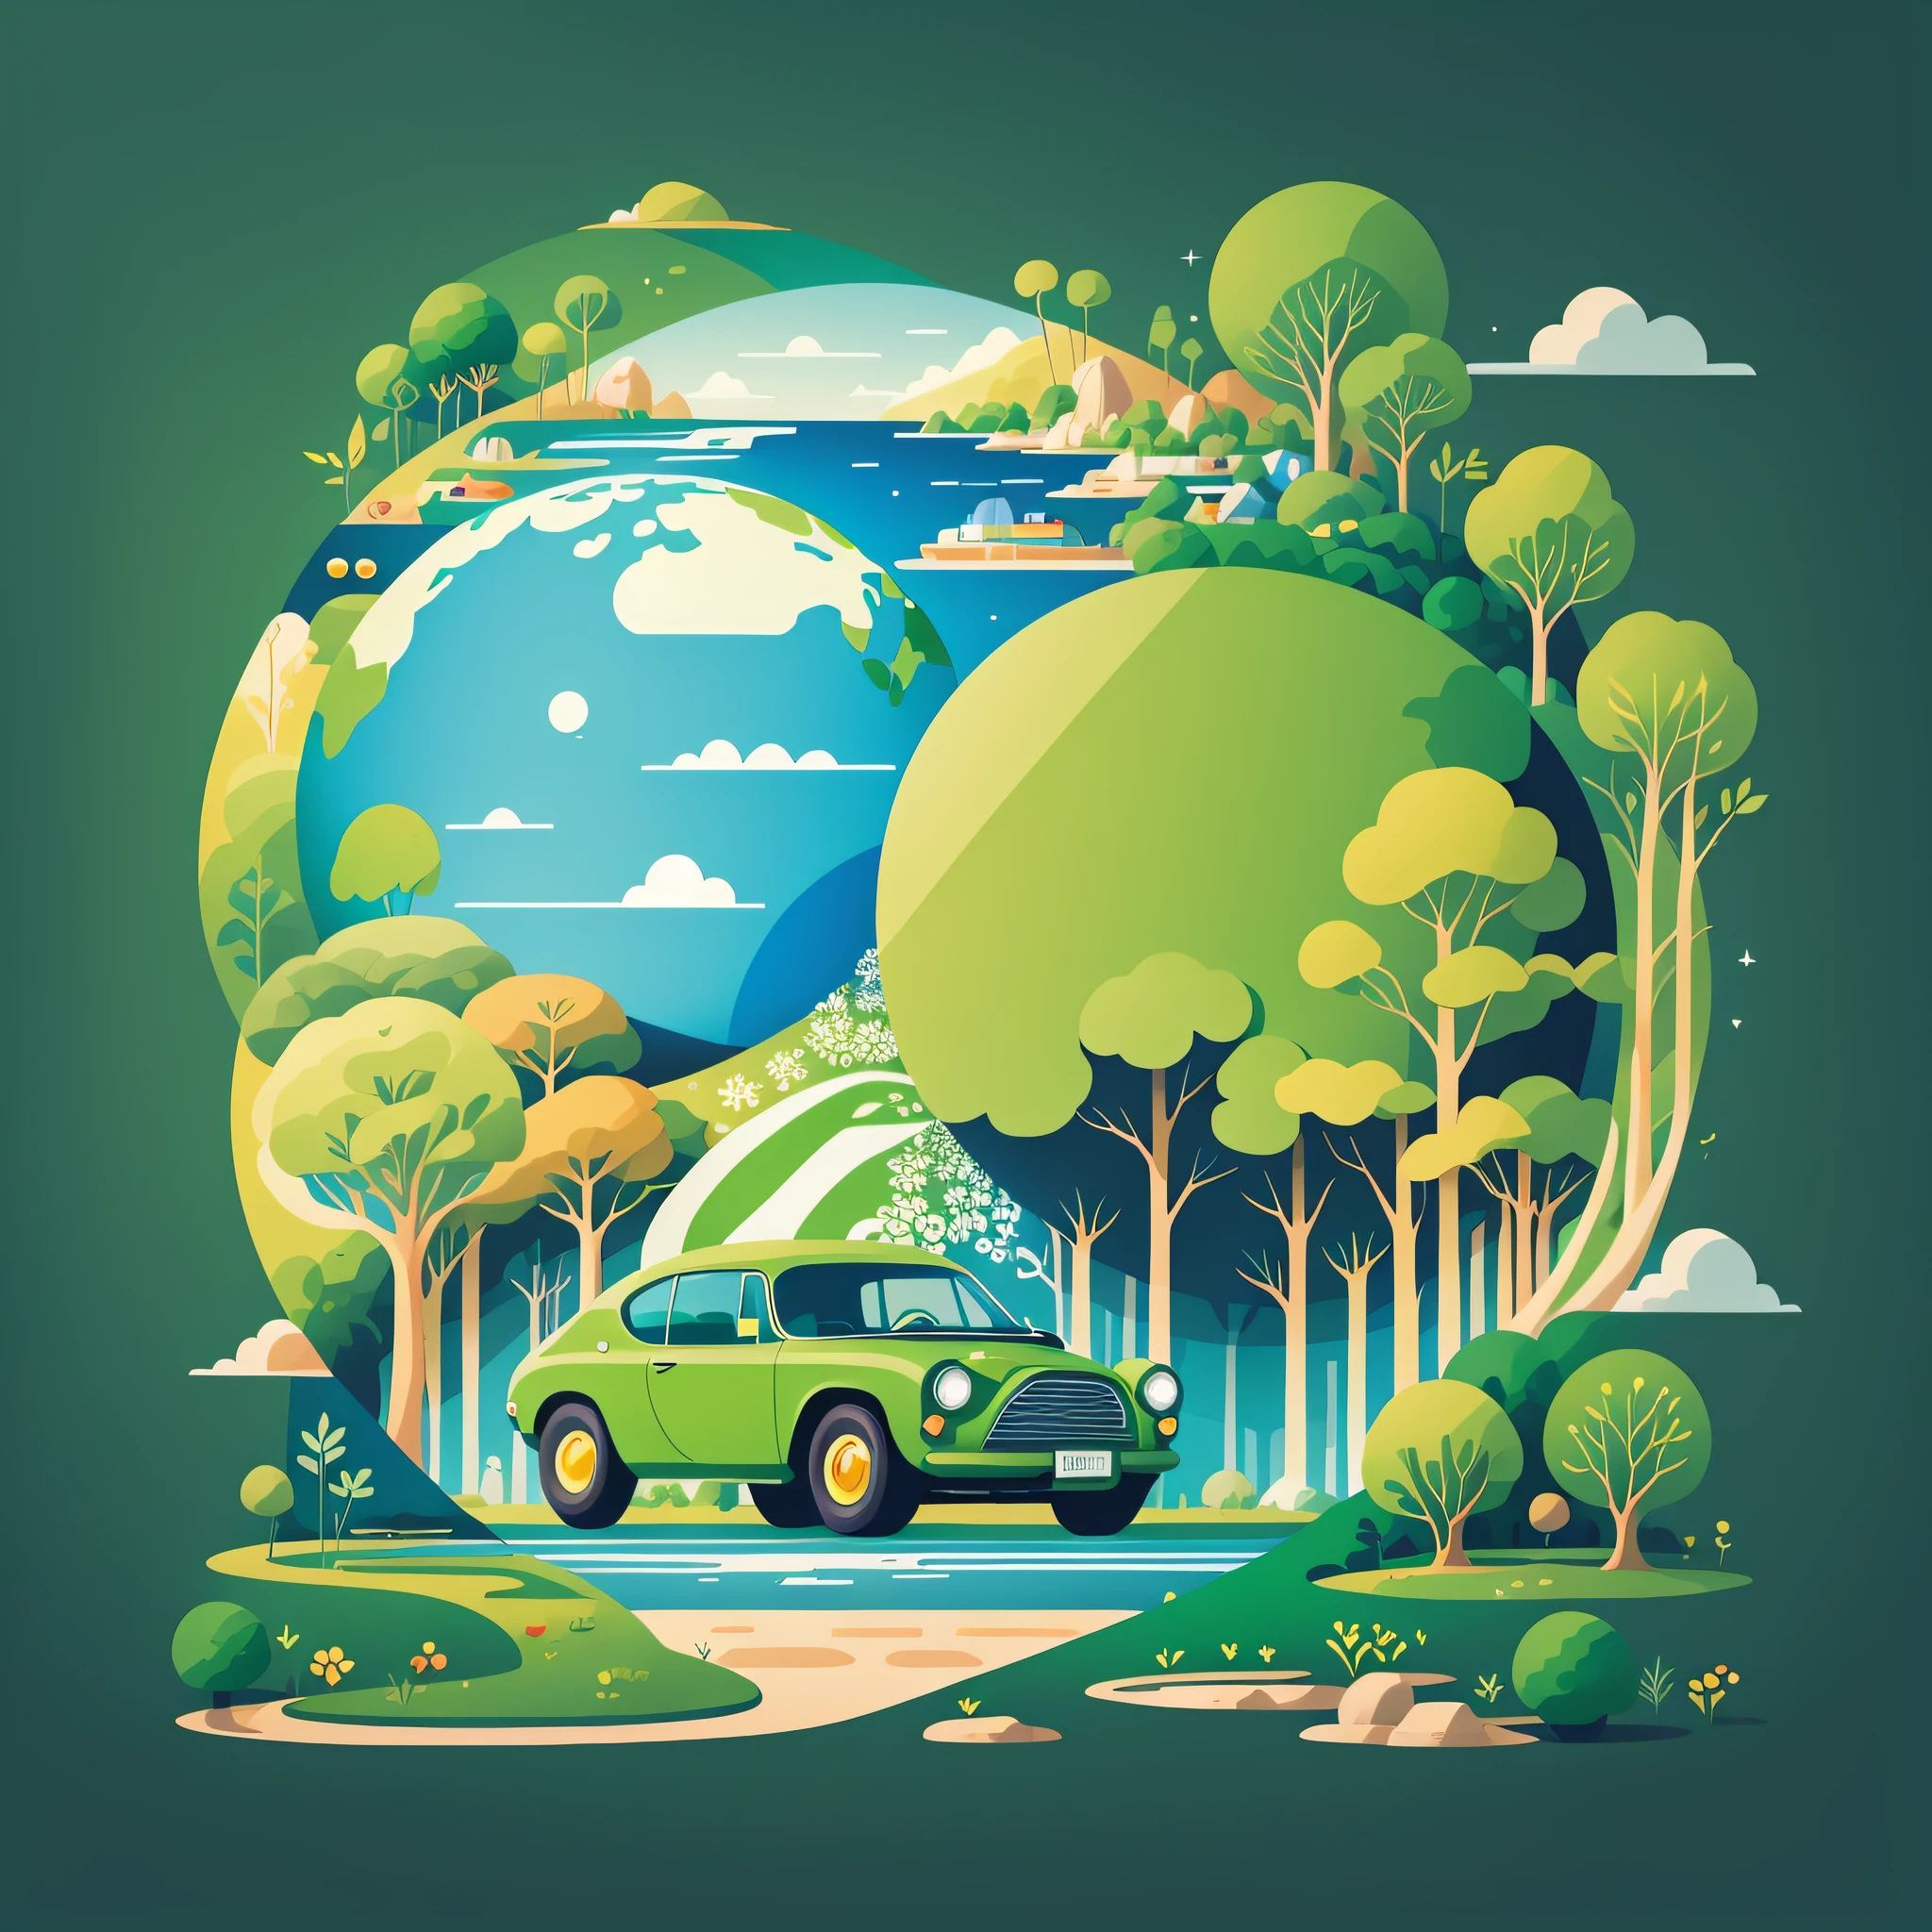 지구의 날 포스터, 평면 그림, super cute car in 녹색 spherical earth, 나무, 꽃들, 풍경, 파란색, 녹색, 노란색, 간단한 배경, 센터 구성, 밝은 색, 키아로스쿠로, 슈퍼 하이 디테일, 4K, 평면 그림 --auto --s2